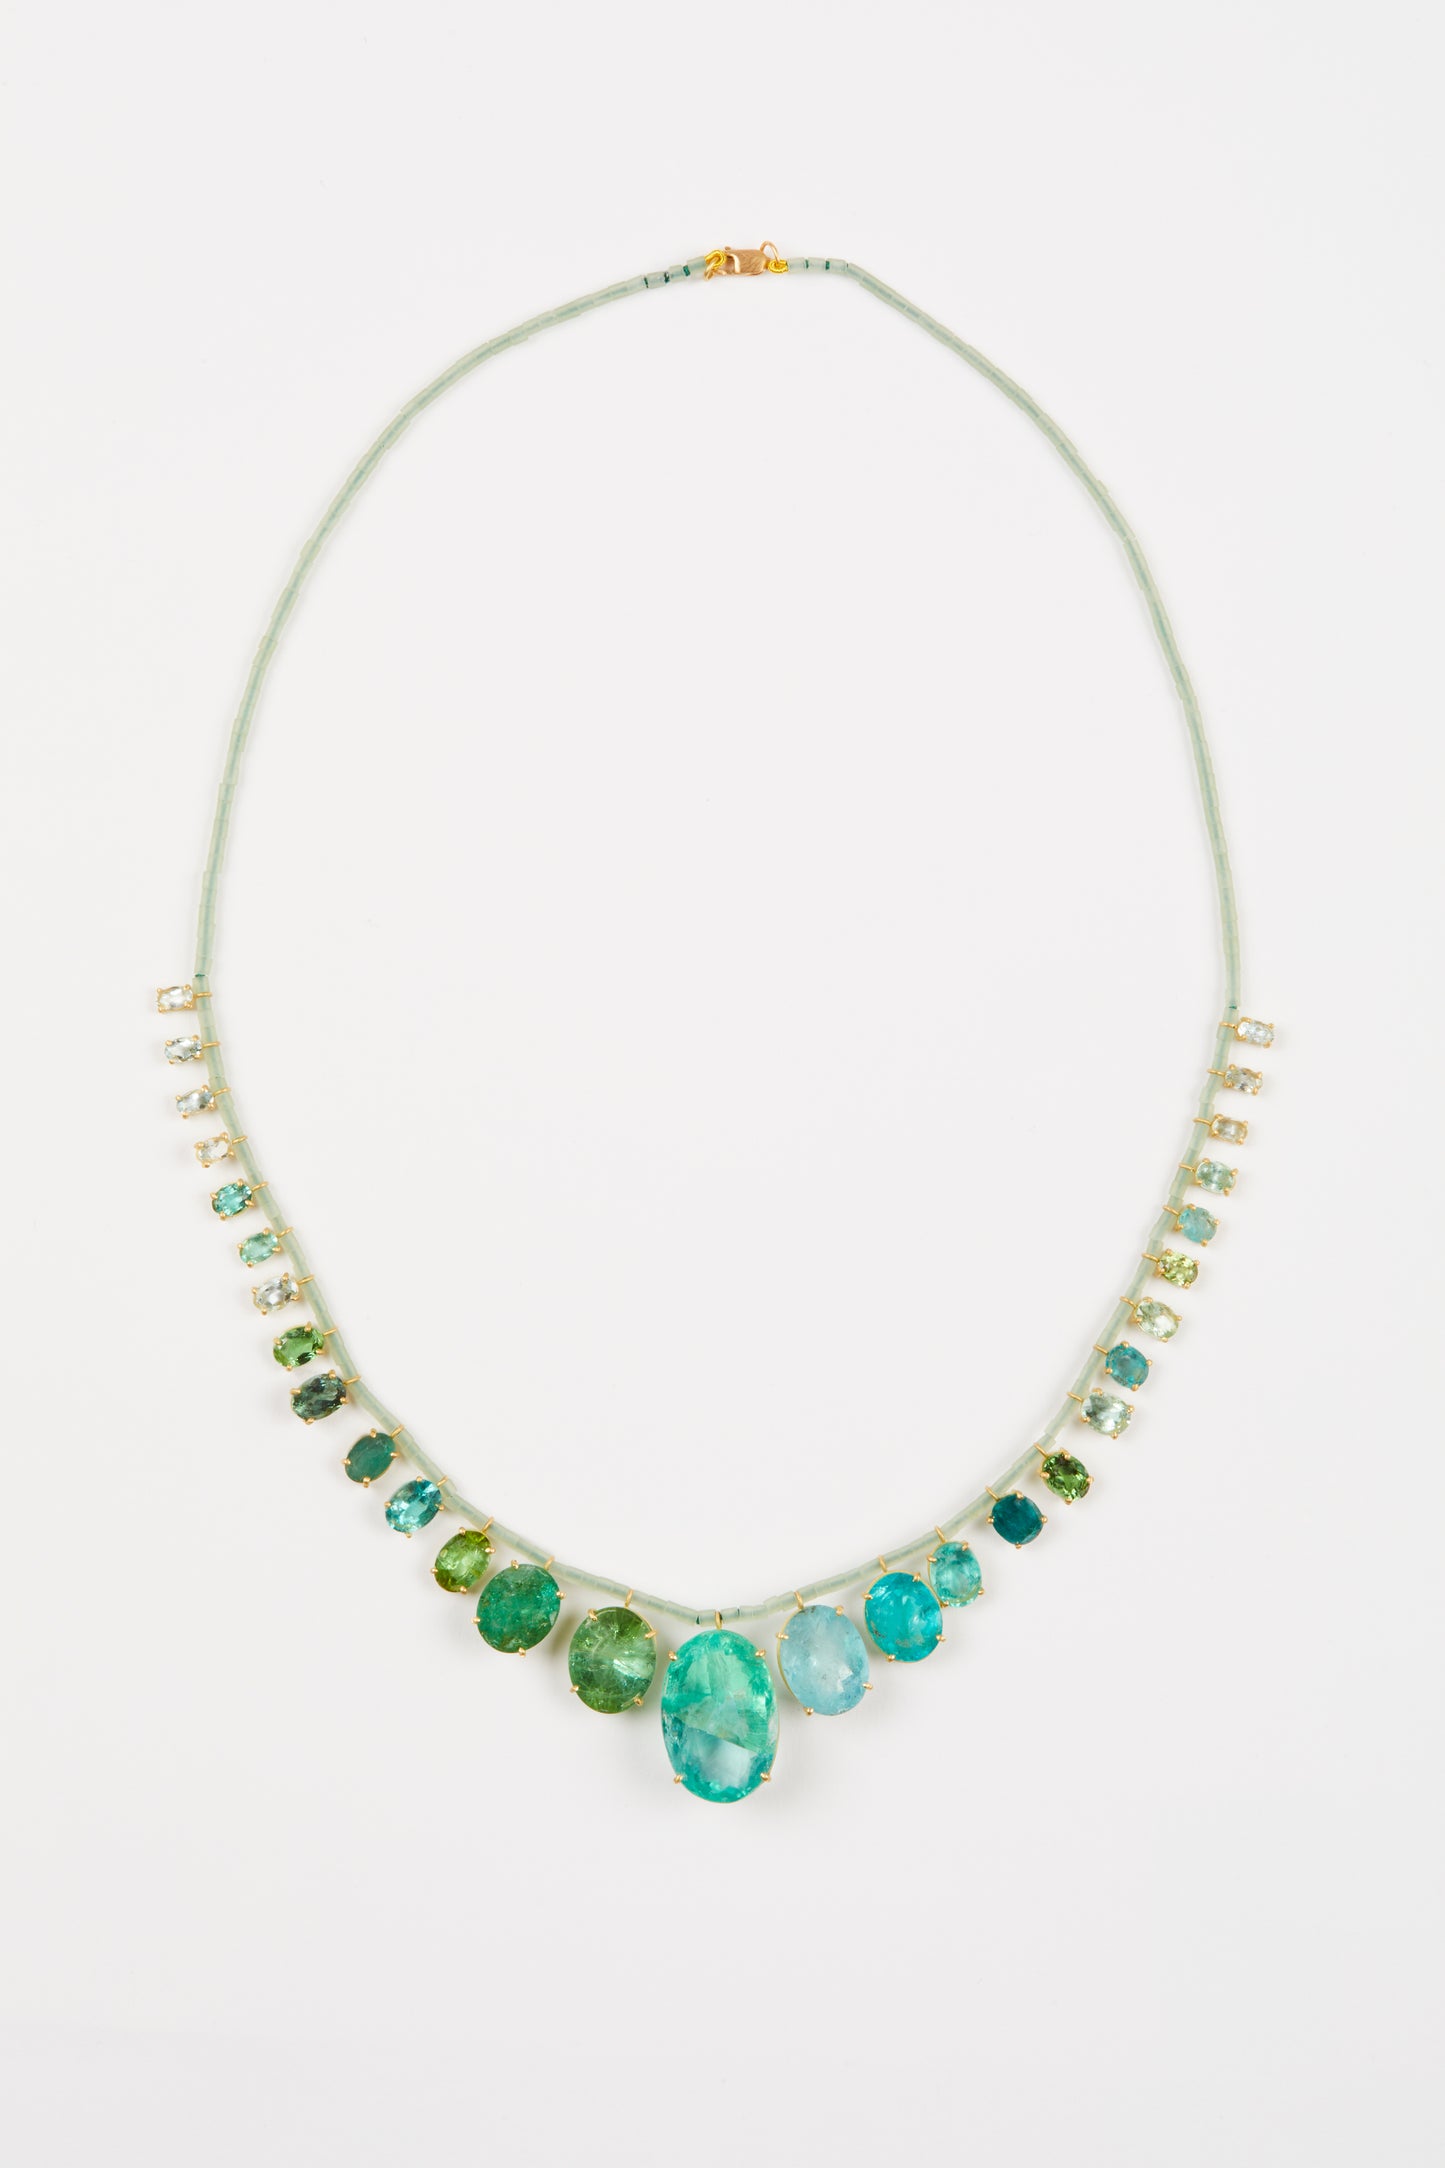 Jade Beads with Fluorite, Aquamarine, Tourmaline and Apatite